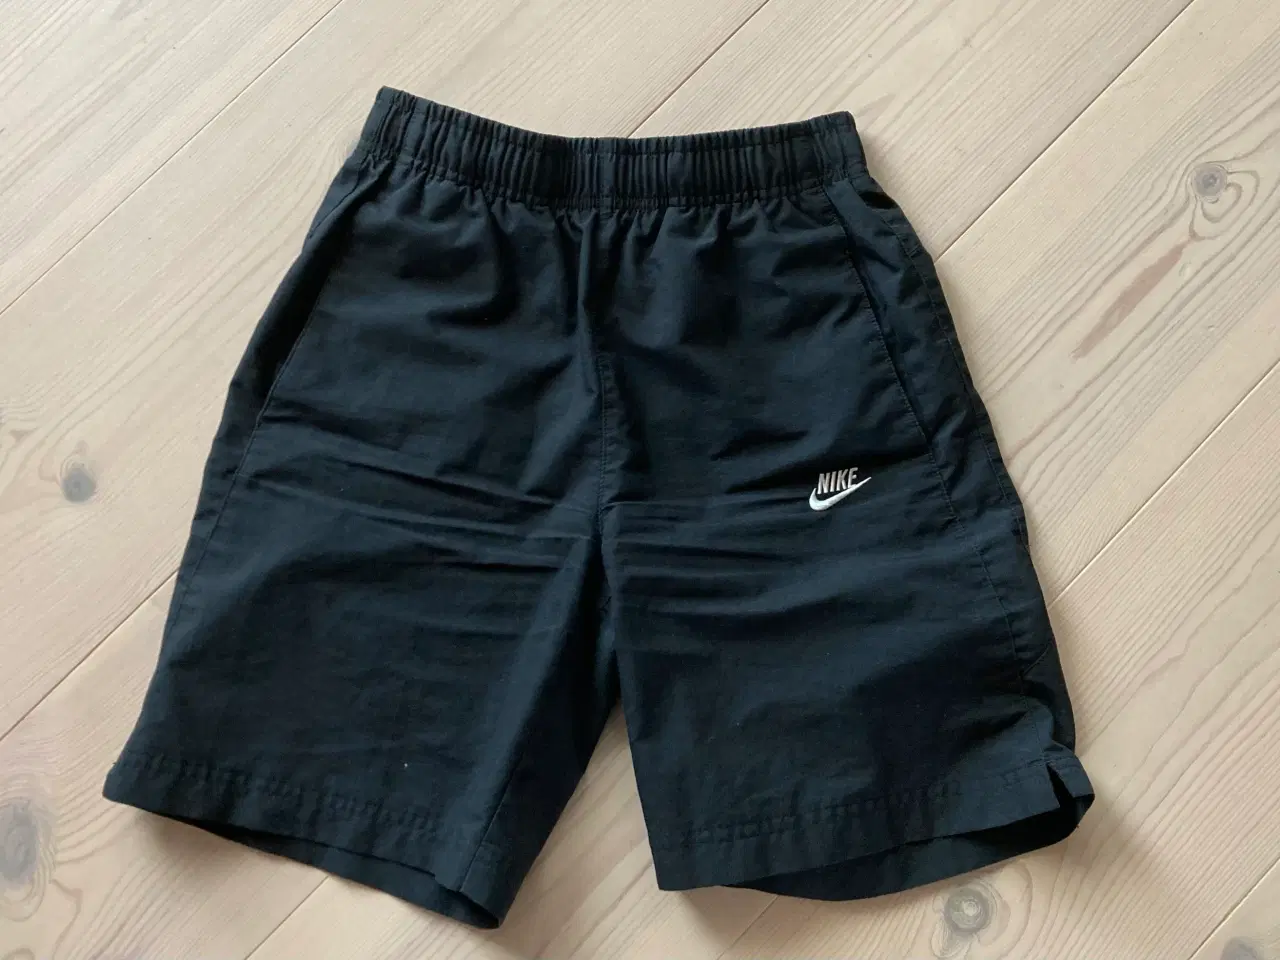 Billede 1 - Nike shorts str. 10-12 år